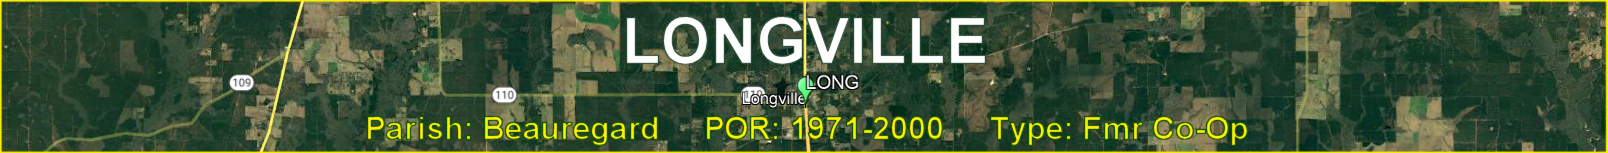 Title image for Longville